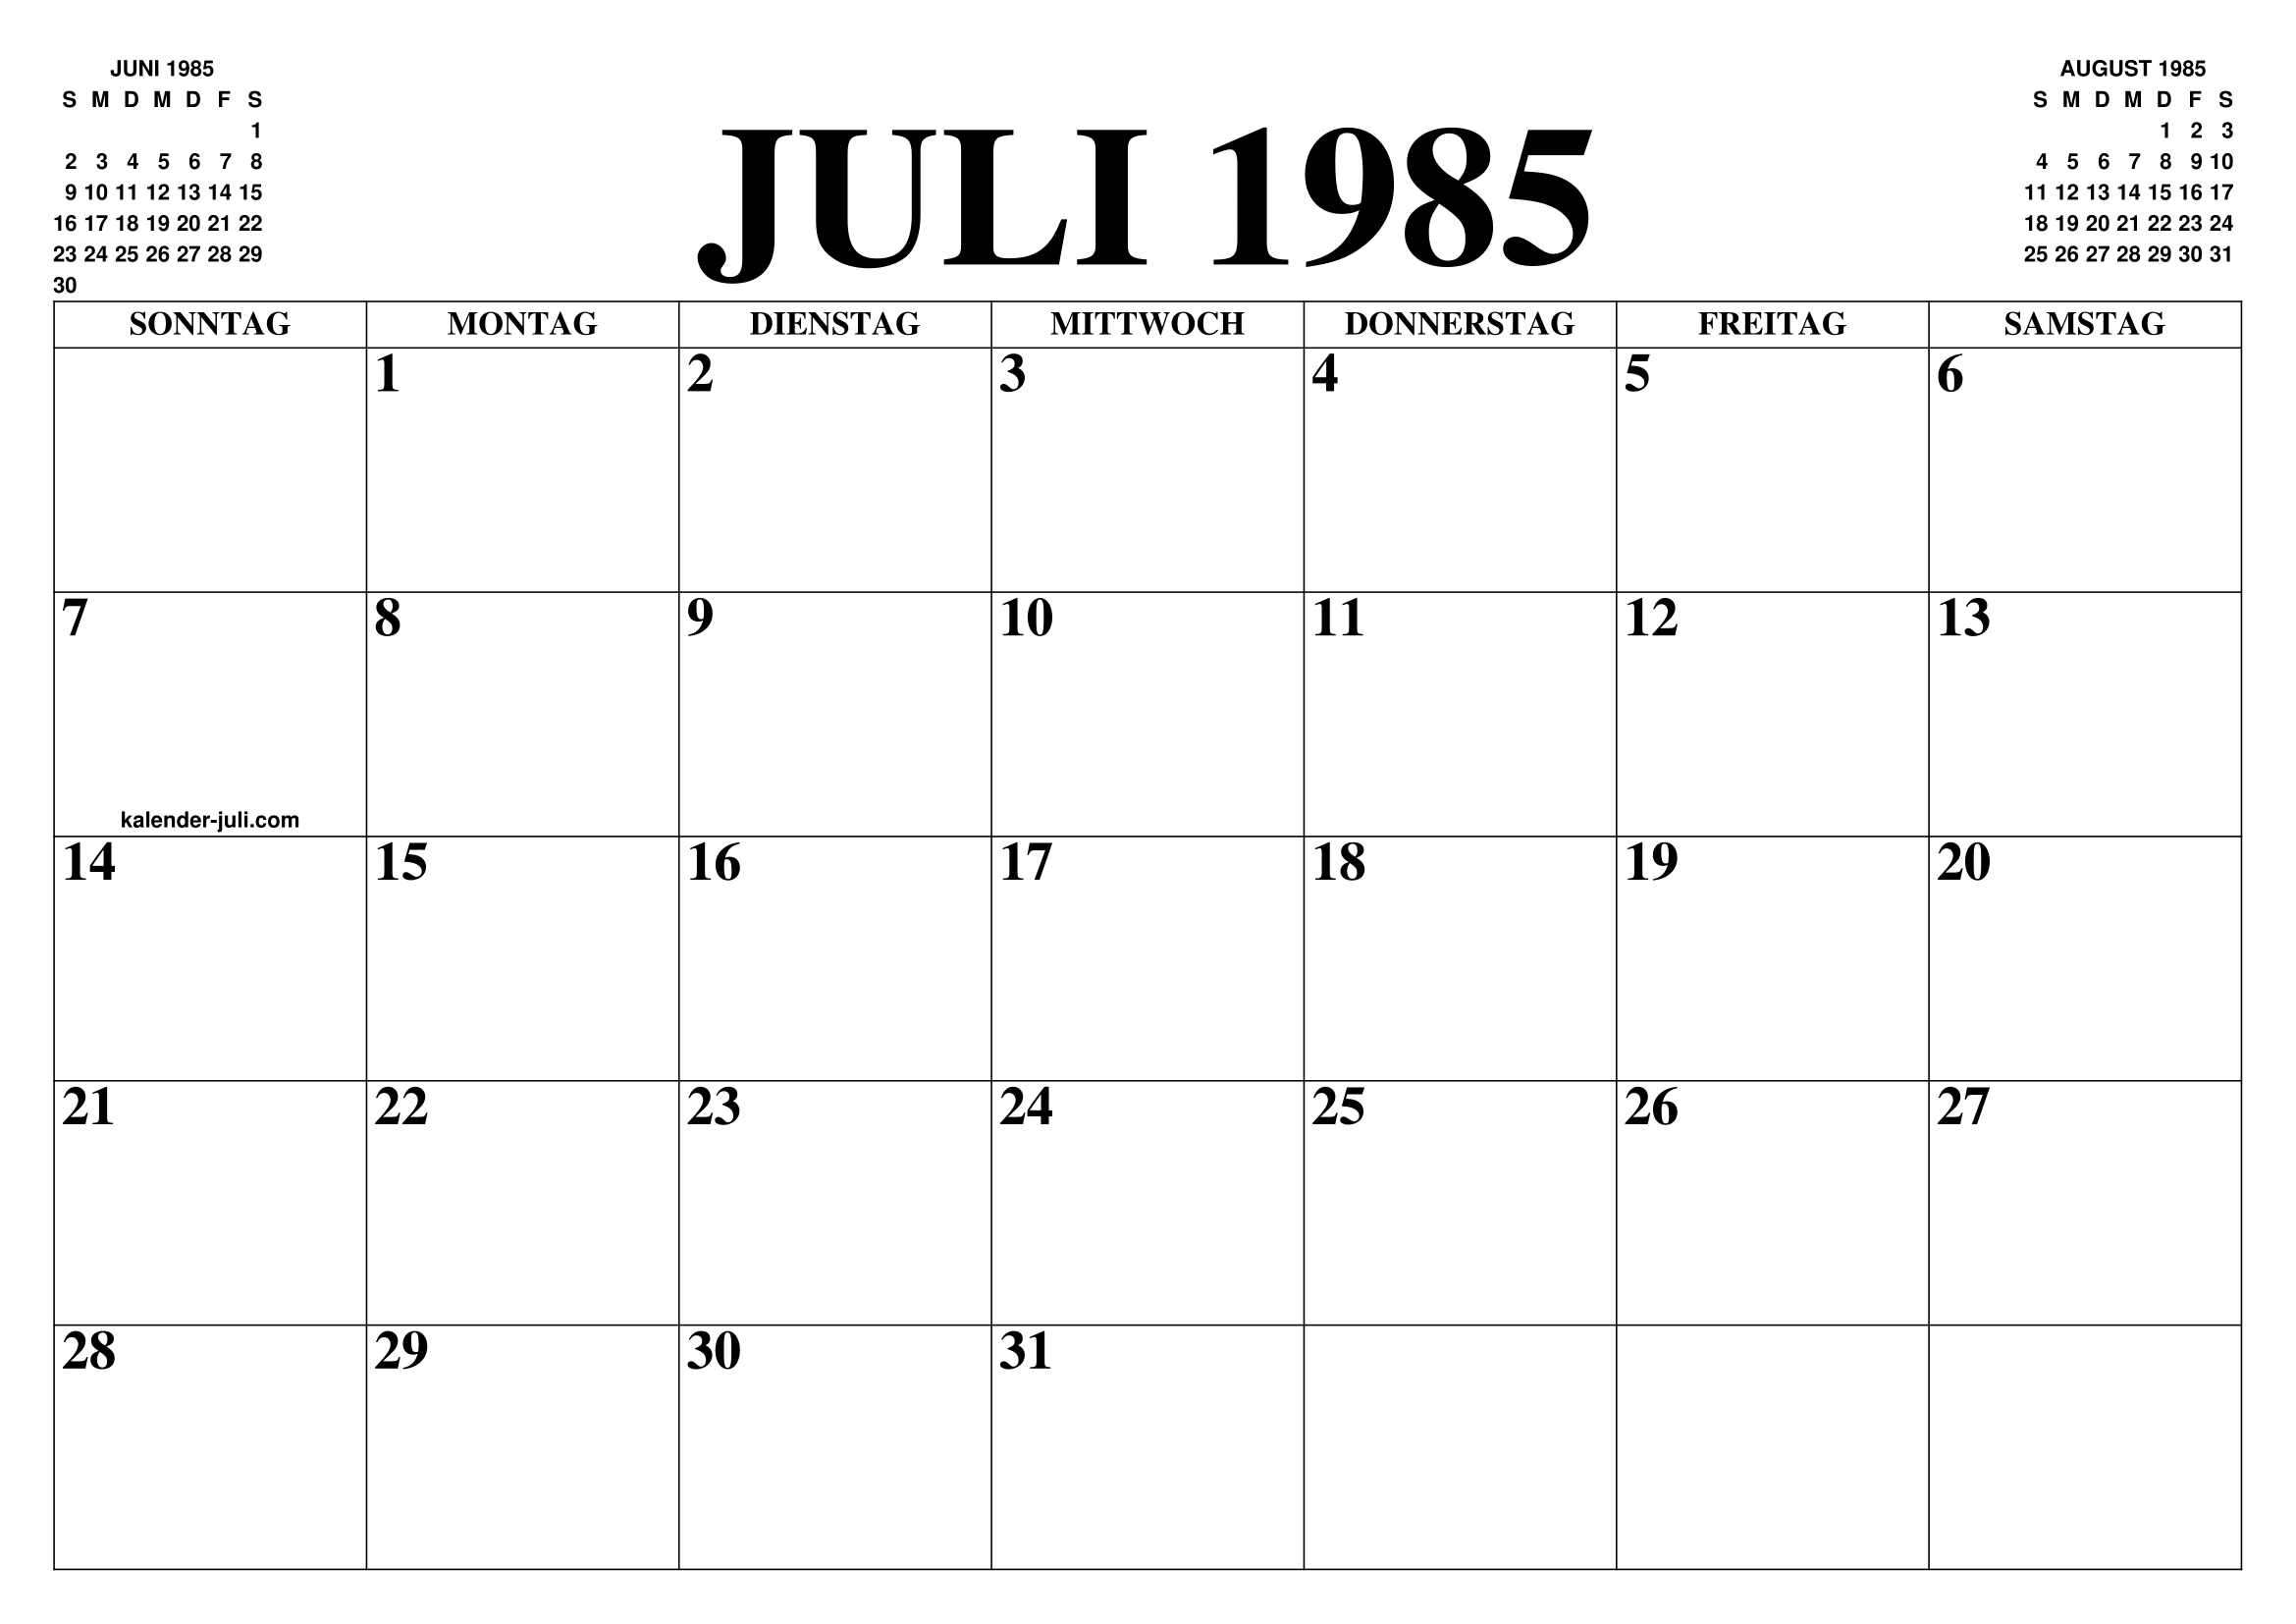 KALENDER JULI 1985 : JULI KALENDER ZUM AUSDRUCKEN GRATIS MONAT UND JAHR